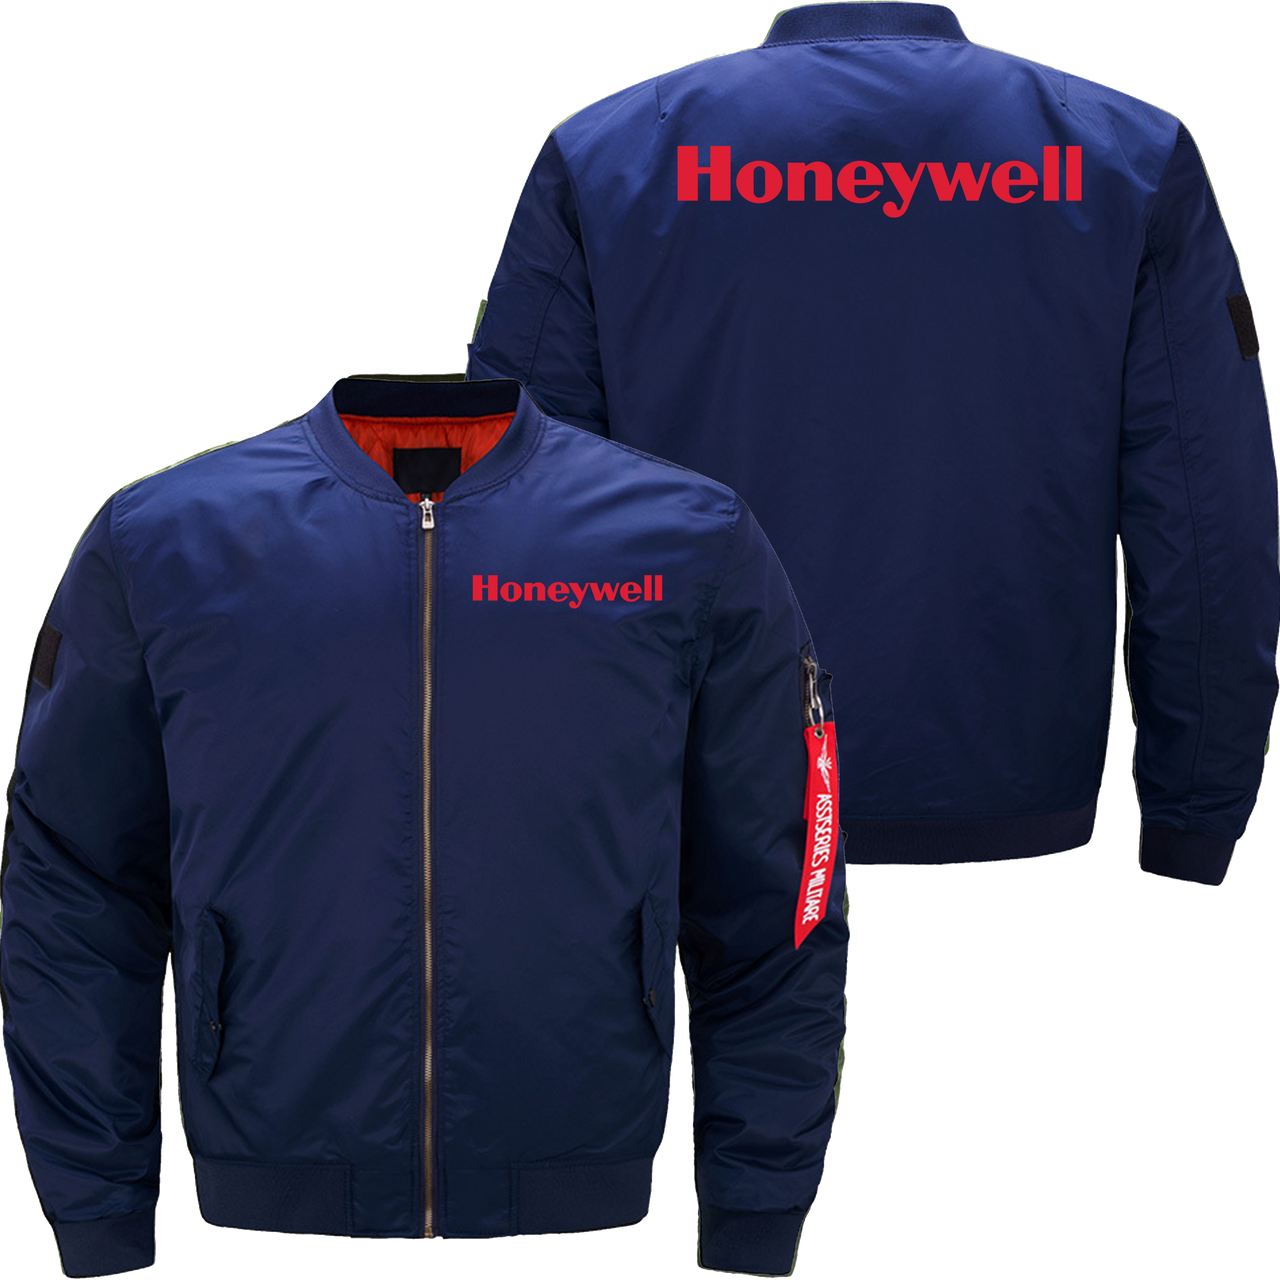 Honeywell Jacket